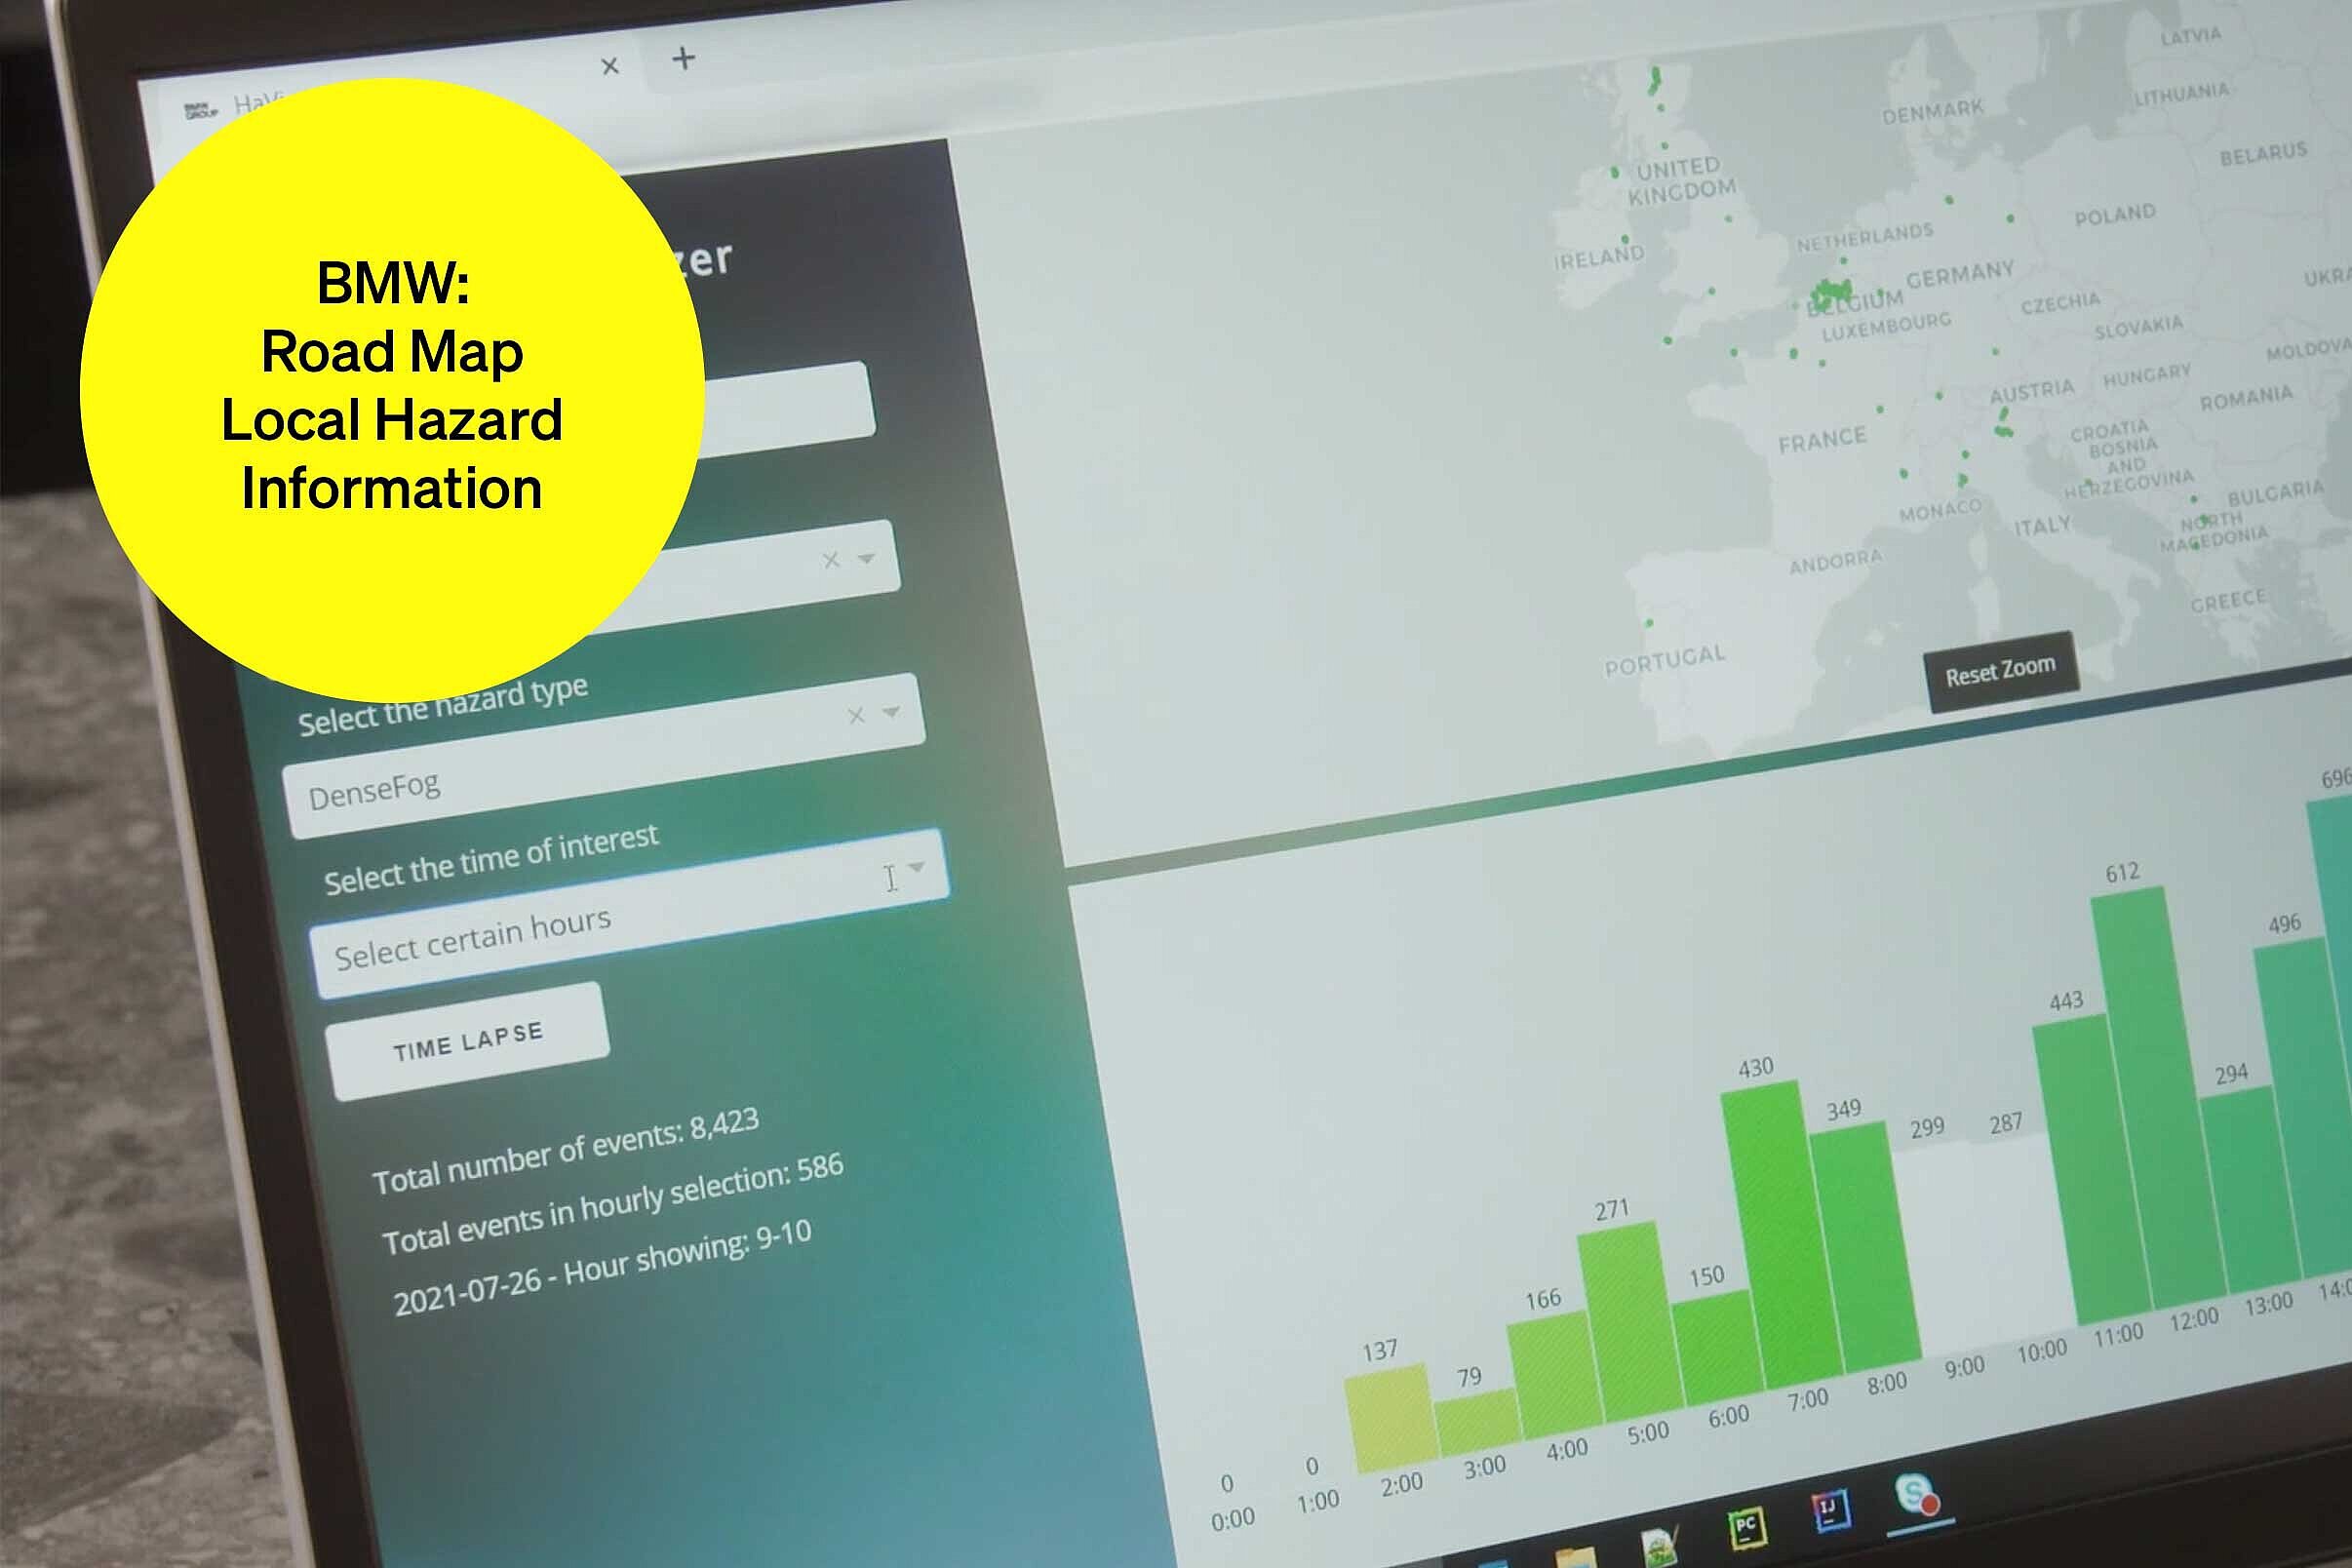 Bildschirm mit Balkendiagramm und Europakarte – Textbaustein in runder Kachel: BMW Road Map Local Hazard Information